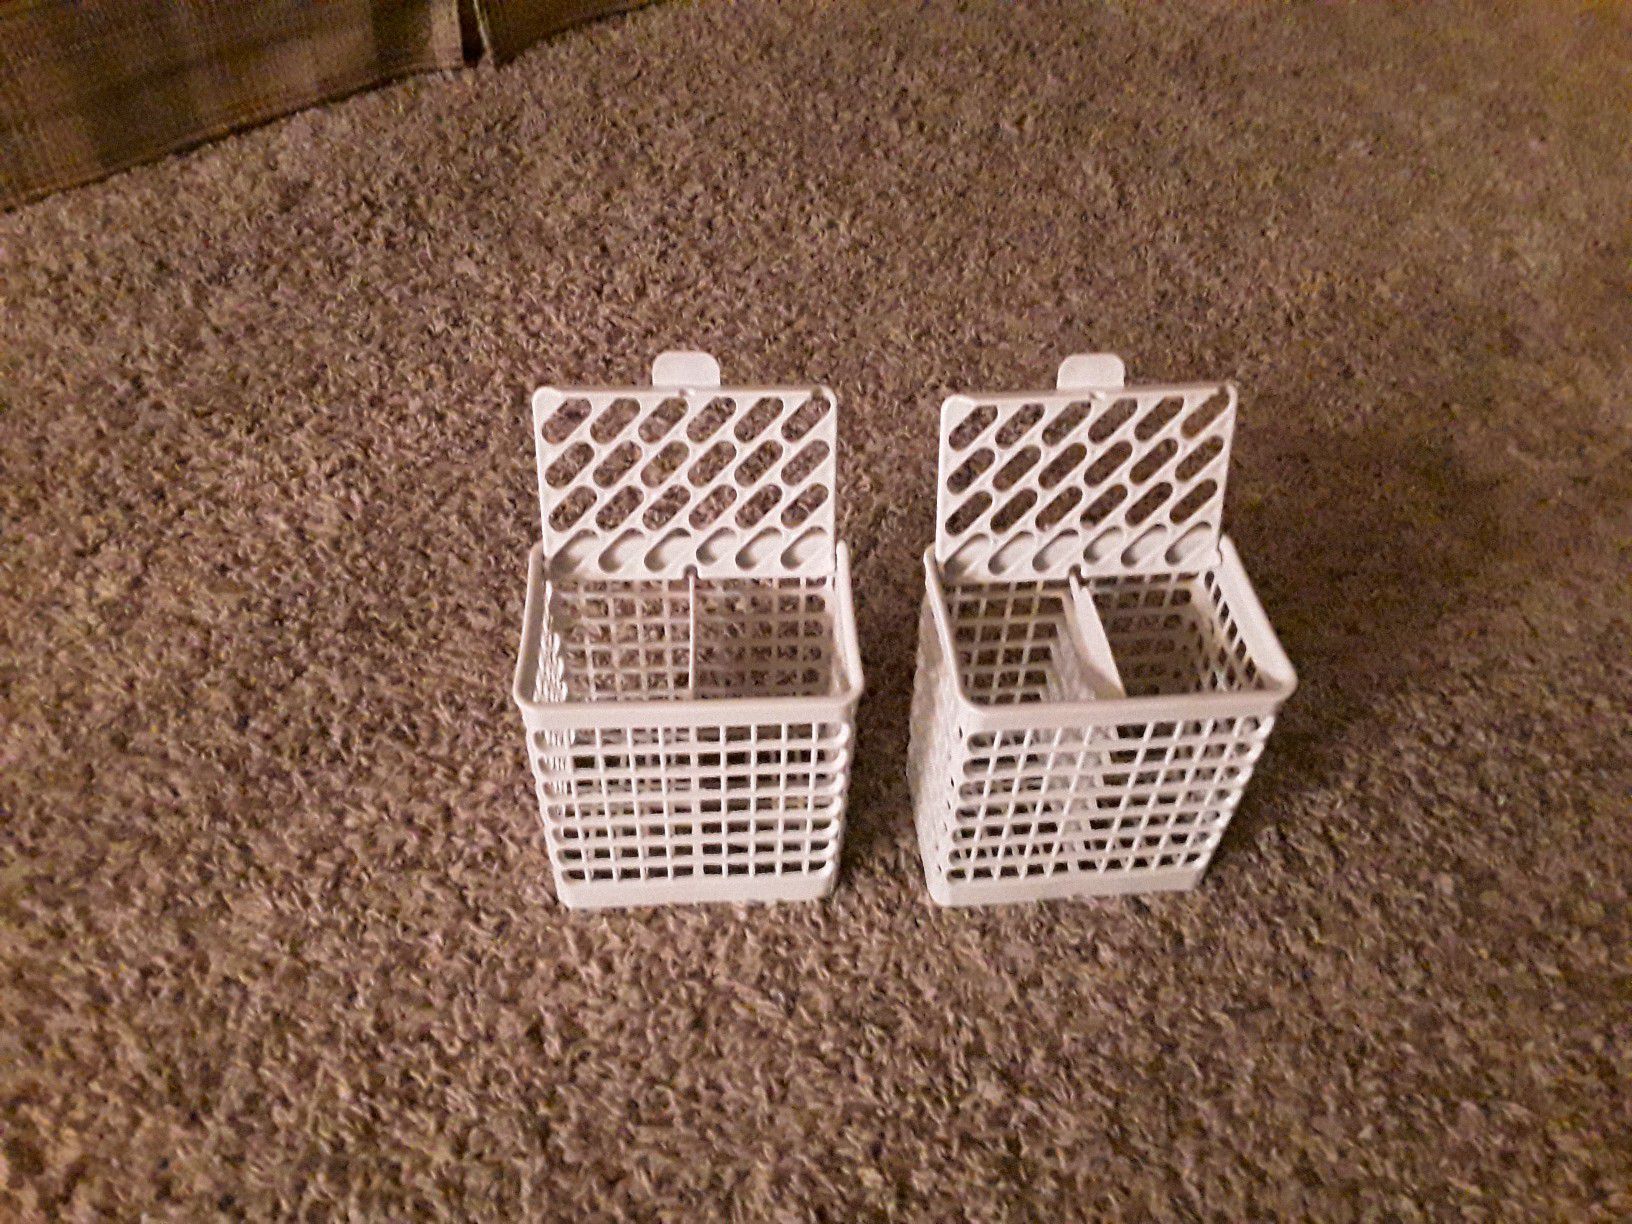 Utinsel baskets for general electric dishwasher